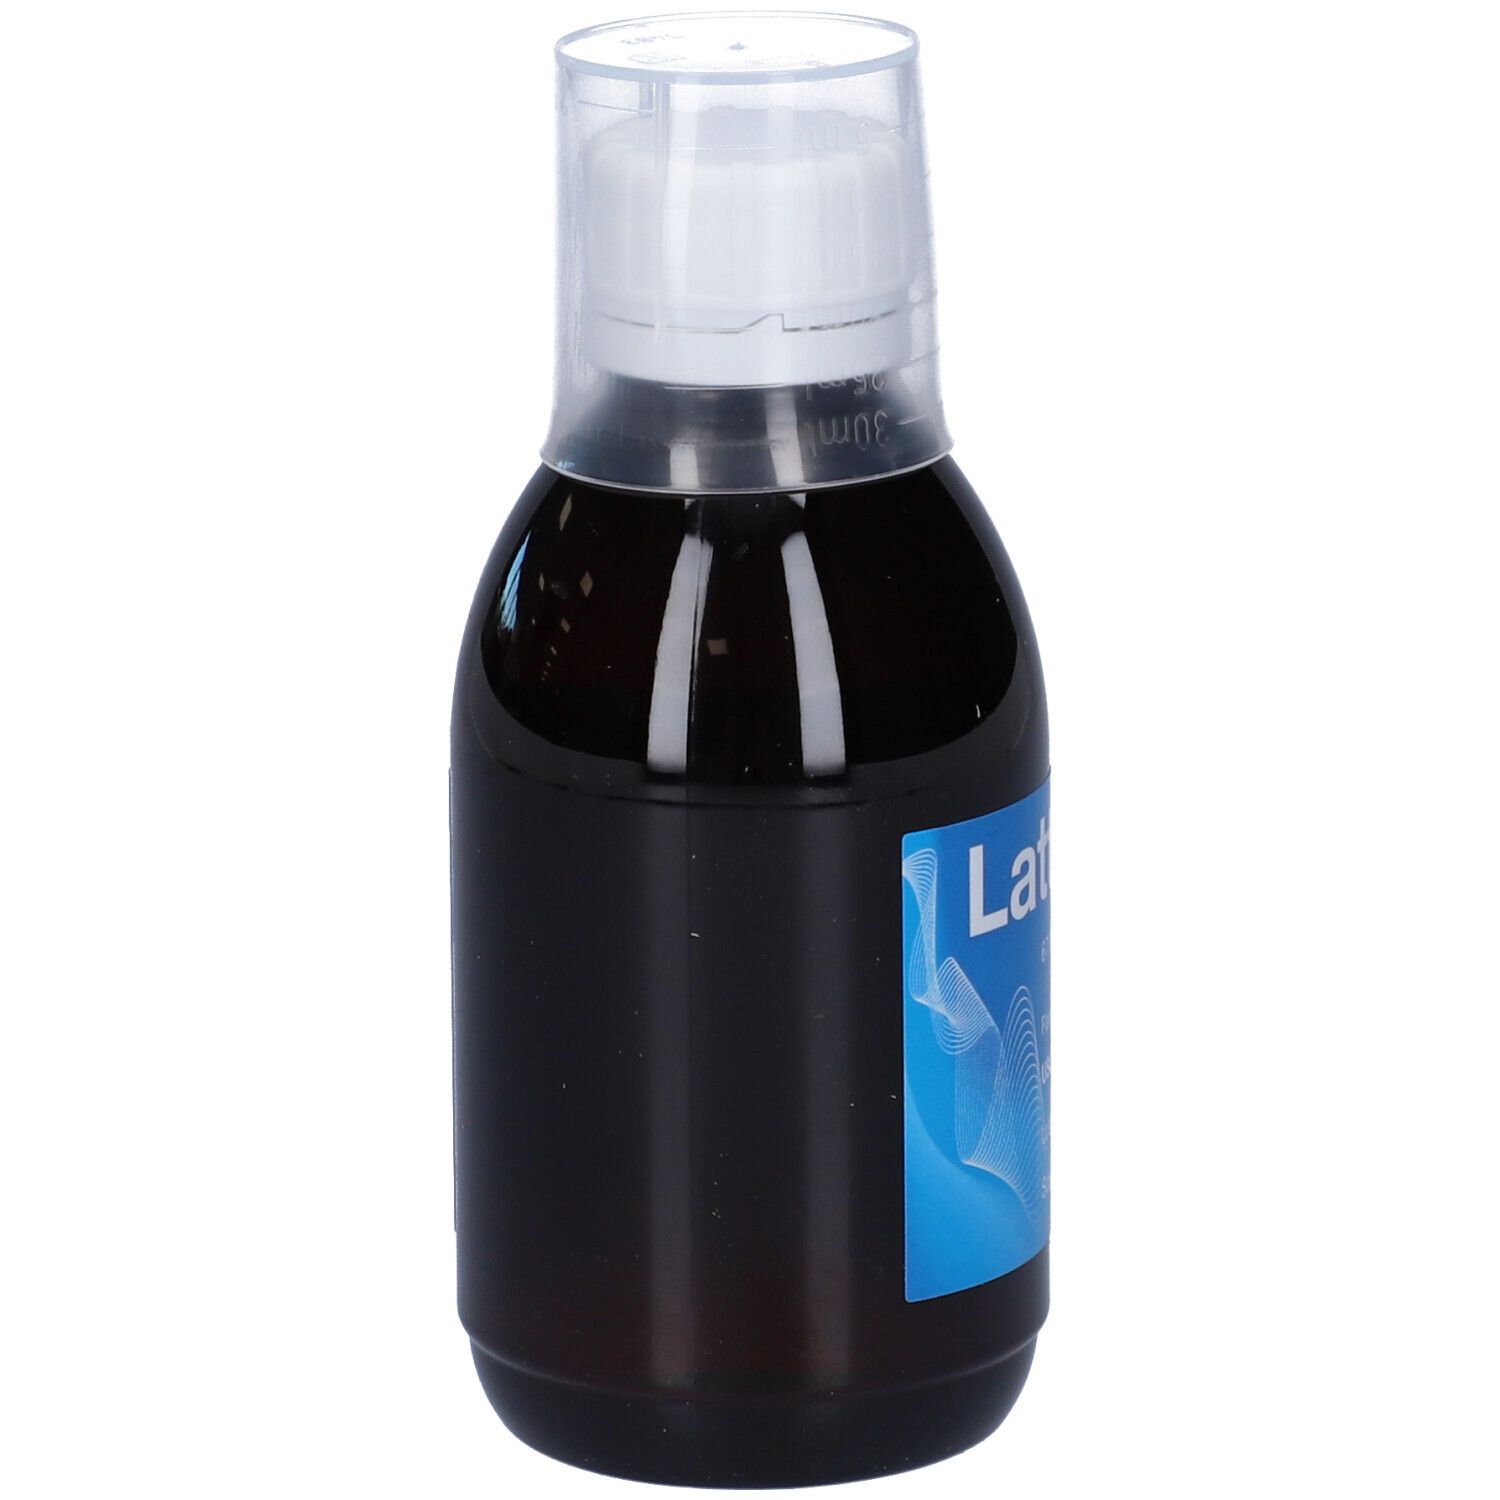 Lattulac® 67,0 g/100 ml Sciroppo